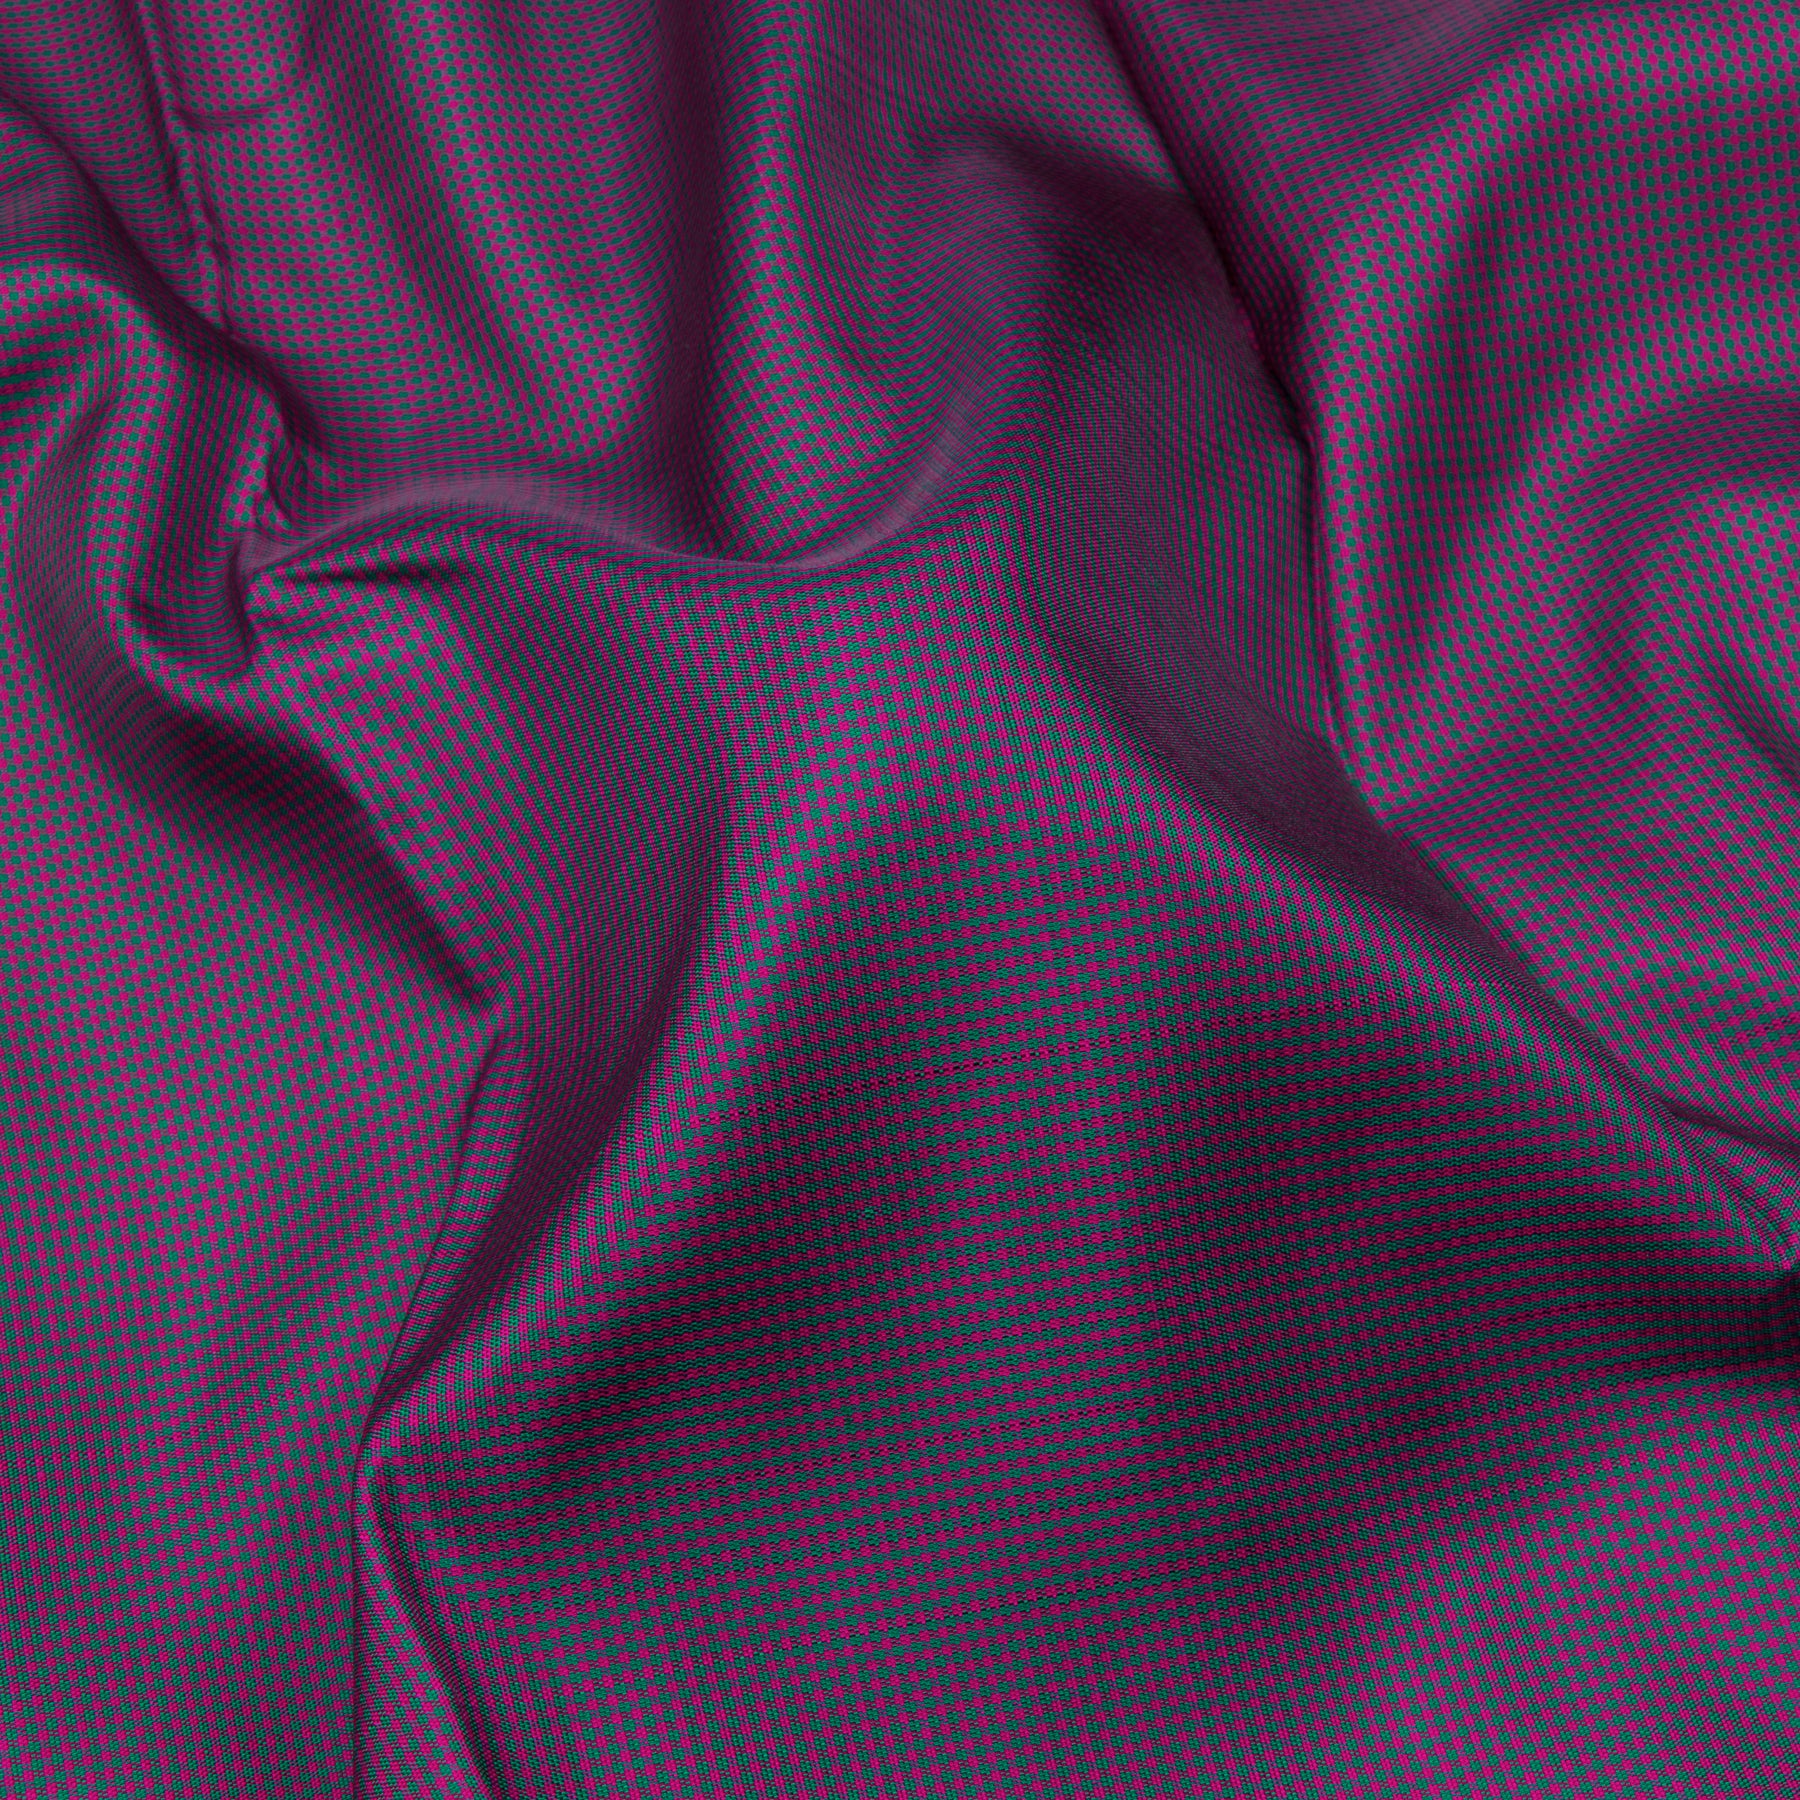 Kanakavalli Kanjivaram Silk Sari 23-595-HS001-12131 - Fabric View